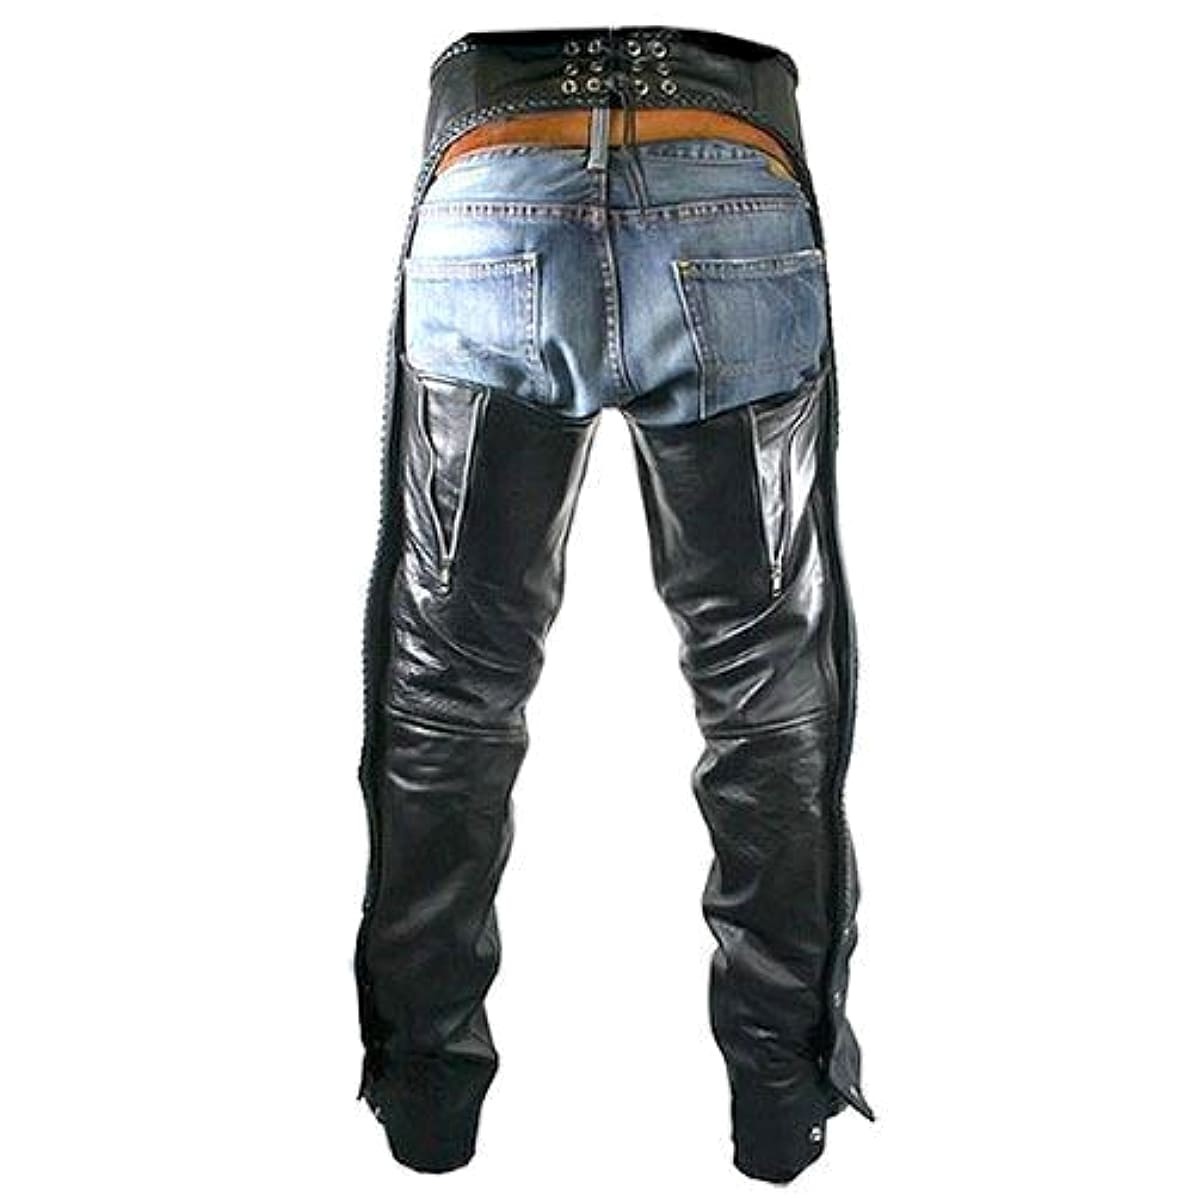 バイク チャップス 本革製 Xelement Men's B7555 Classic Black Braided Leather Chaps メンズ  ブラック レザーパンツ 大きいサイズ